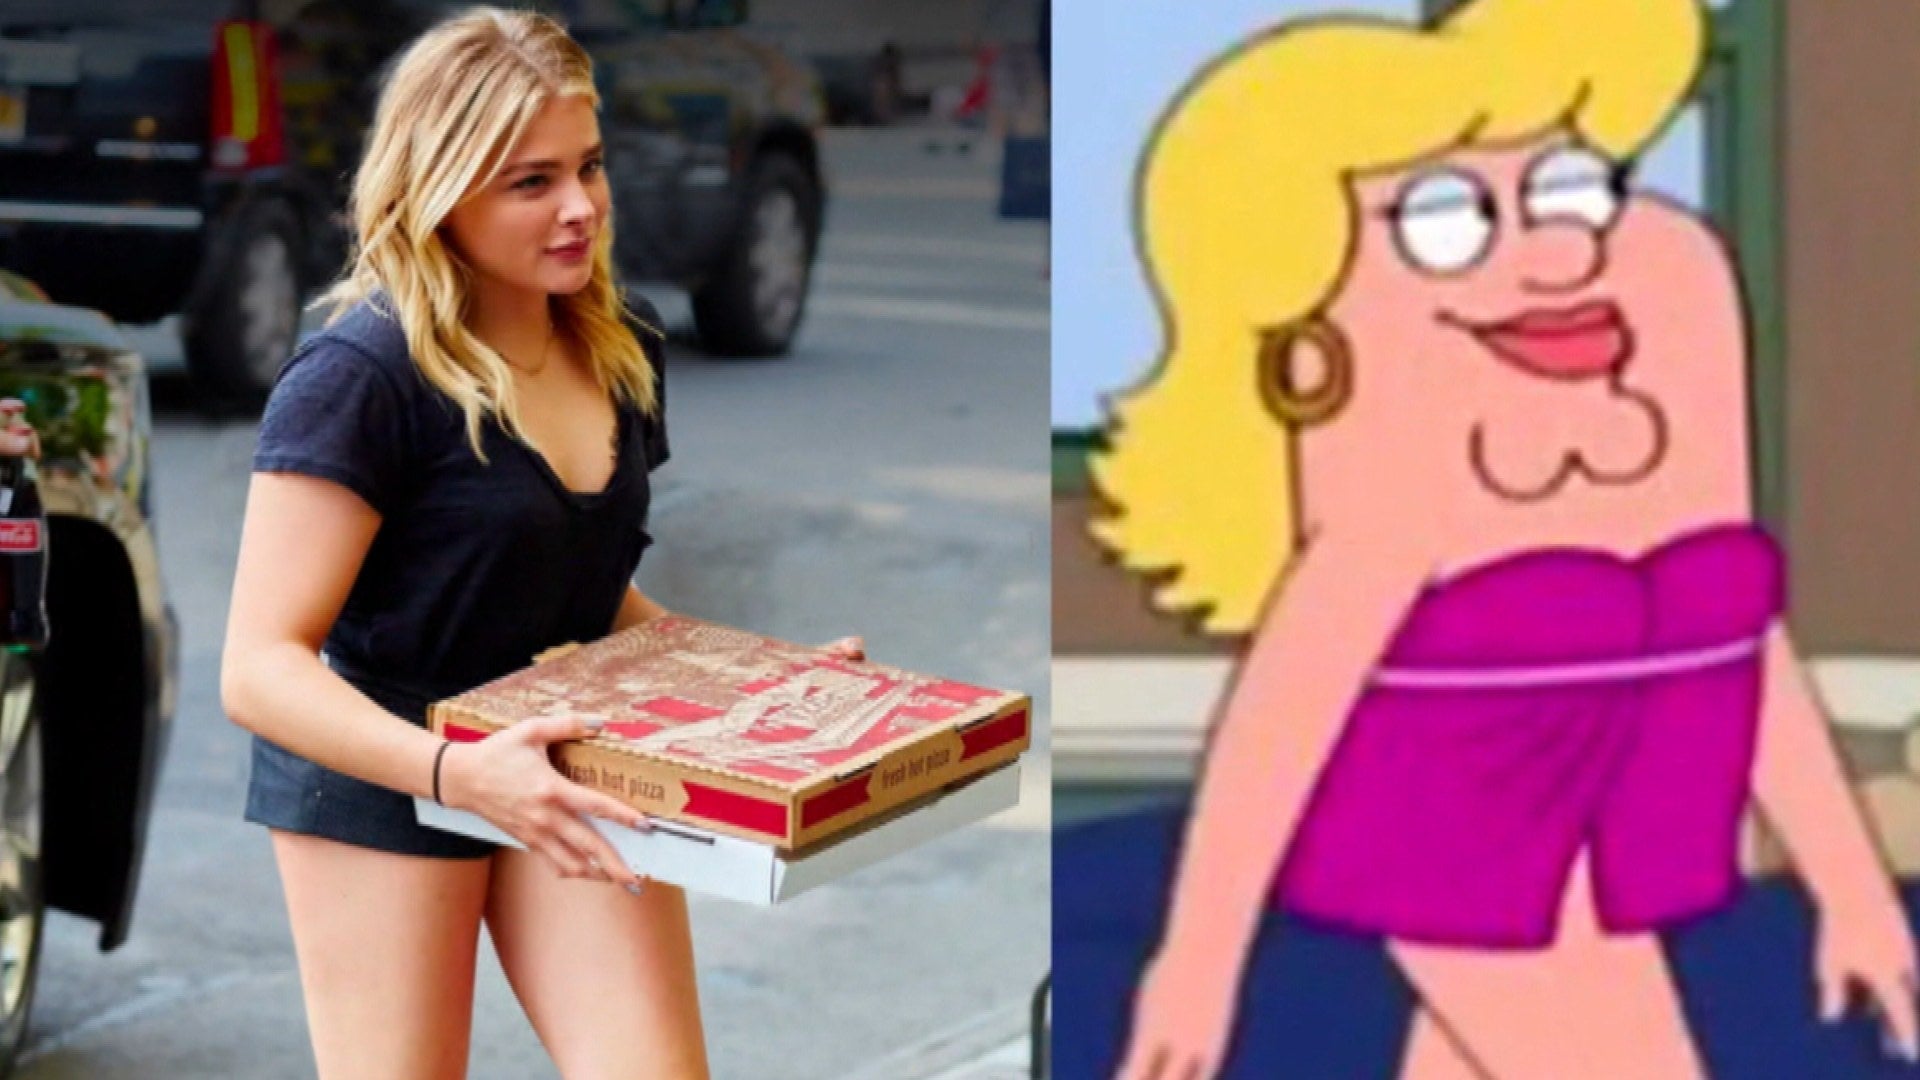 Chloë Grace Moretz Says Family Guy Meme Is 'Horrific': 'My Body Is